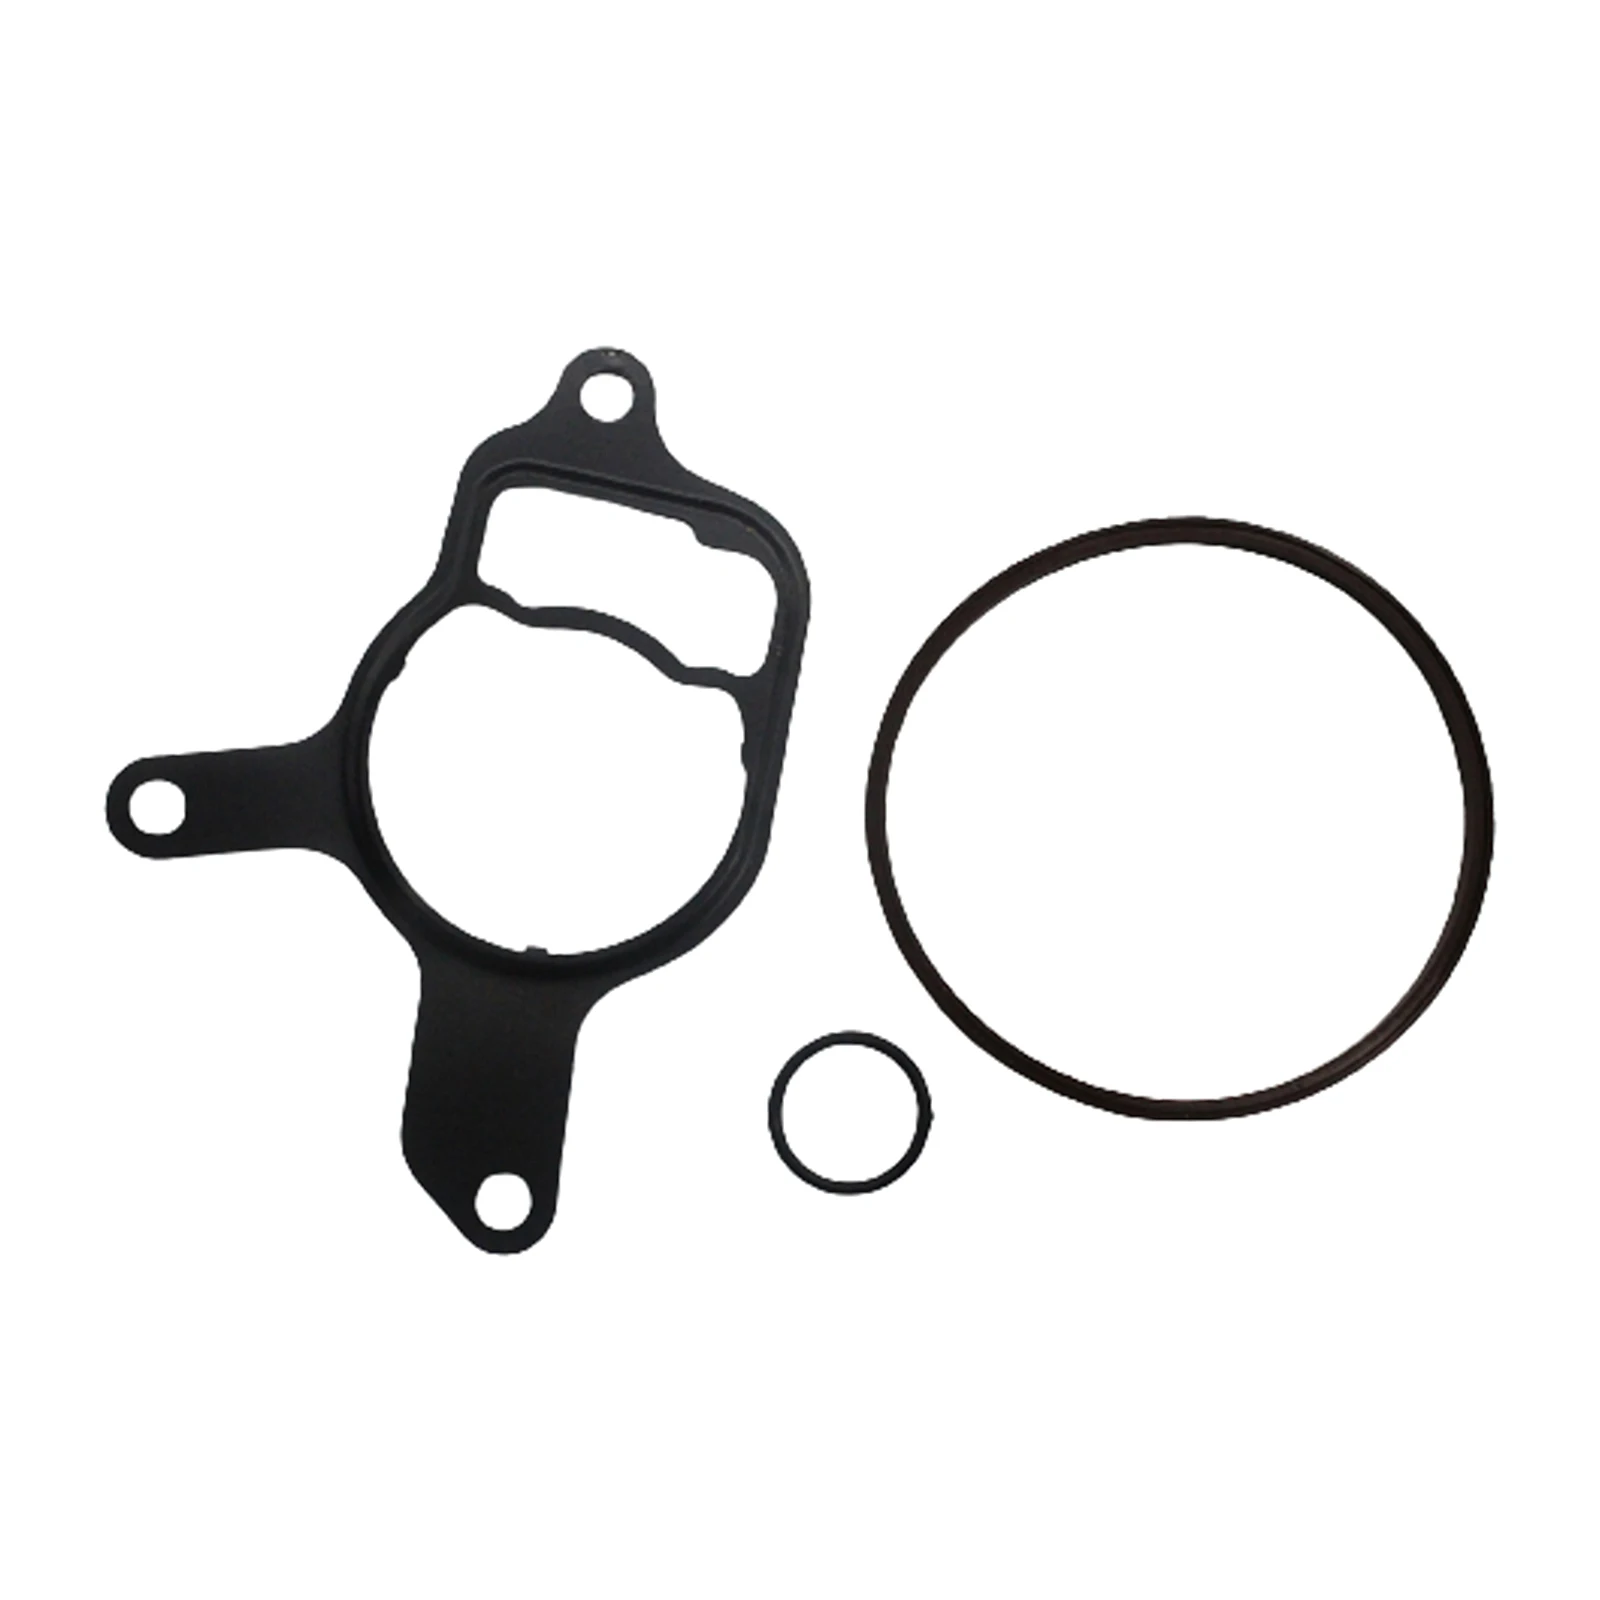 Automobile 2.5L Vacuum Pump Repair Re-seal Kit Reseal/Rebuild Tool for Volkswagen Golf Passat and Audi TT RS | Автомобили и